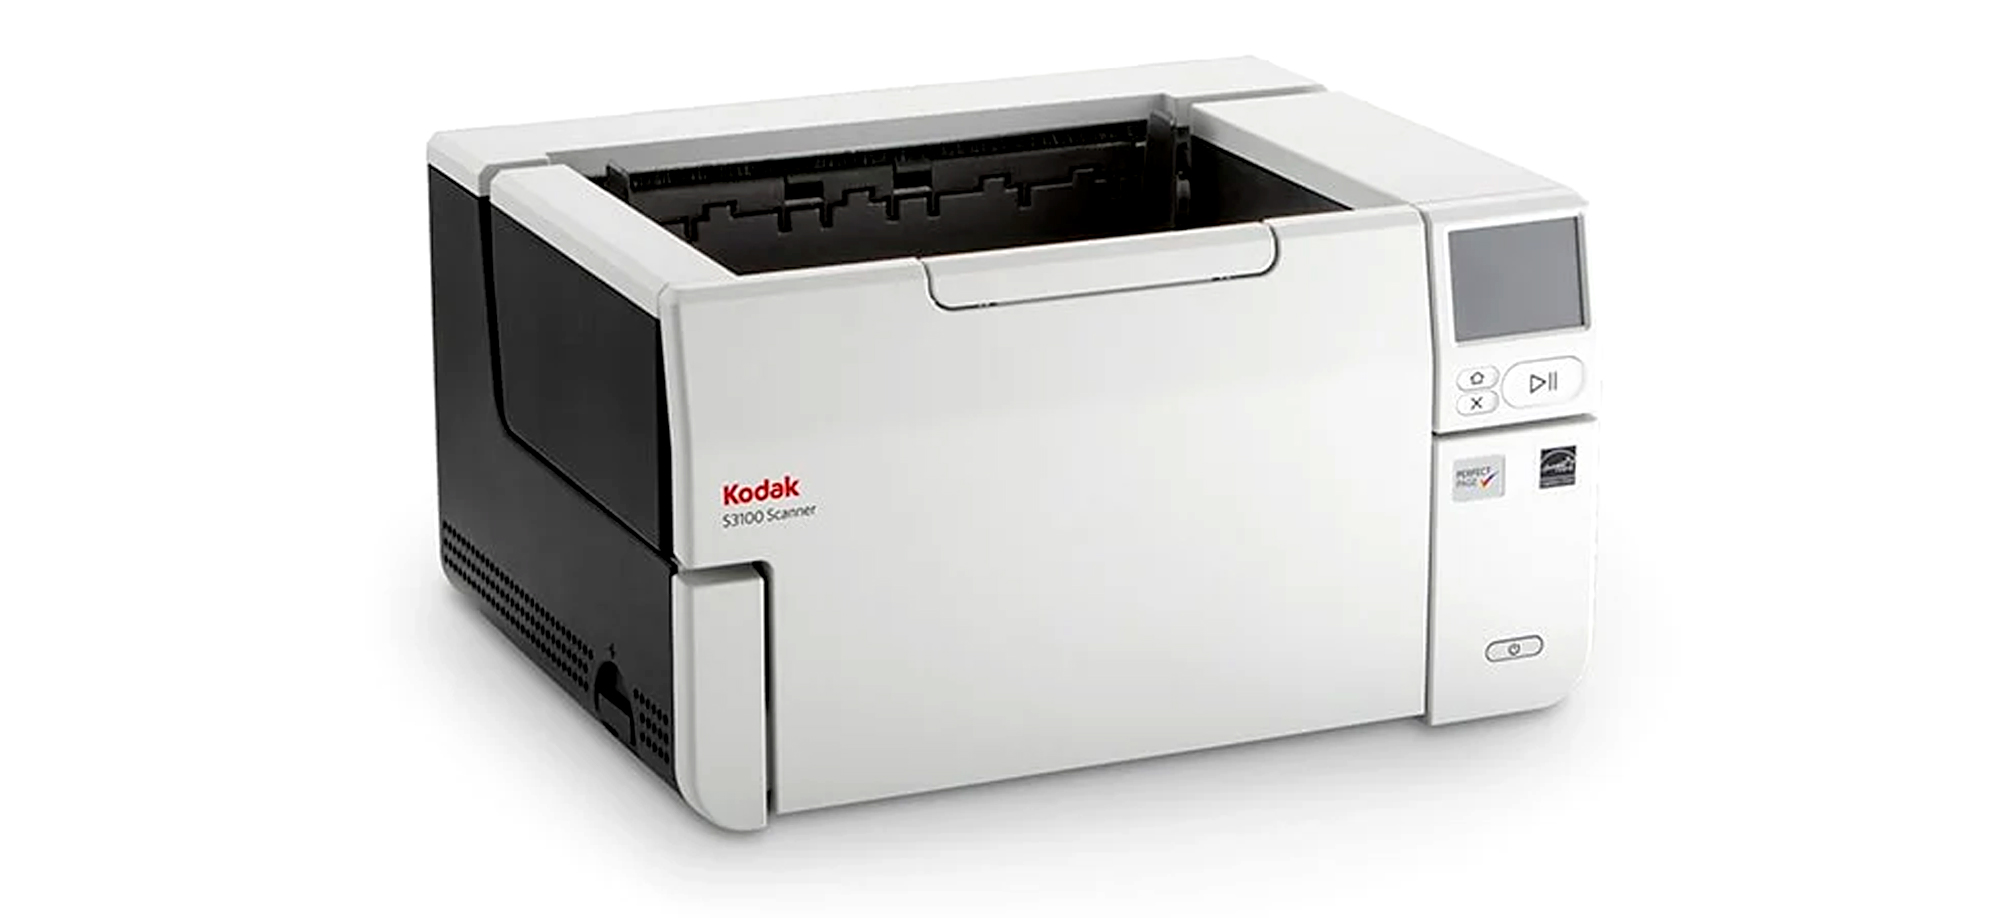 Scanner Kodak Serie s3000